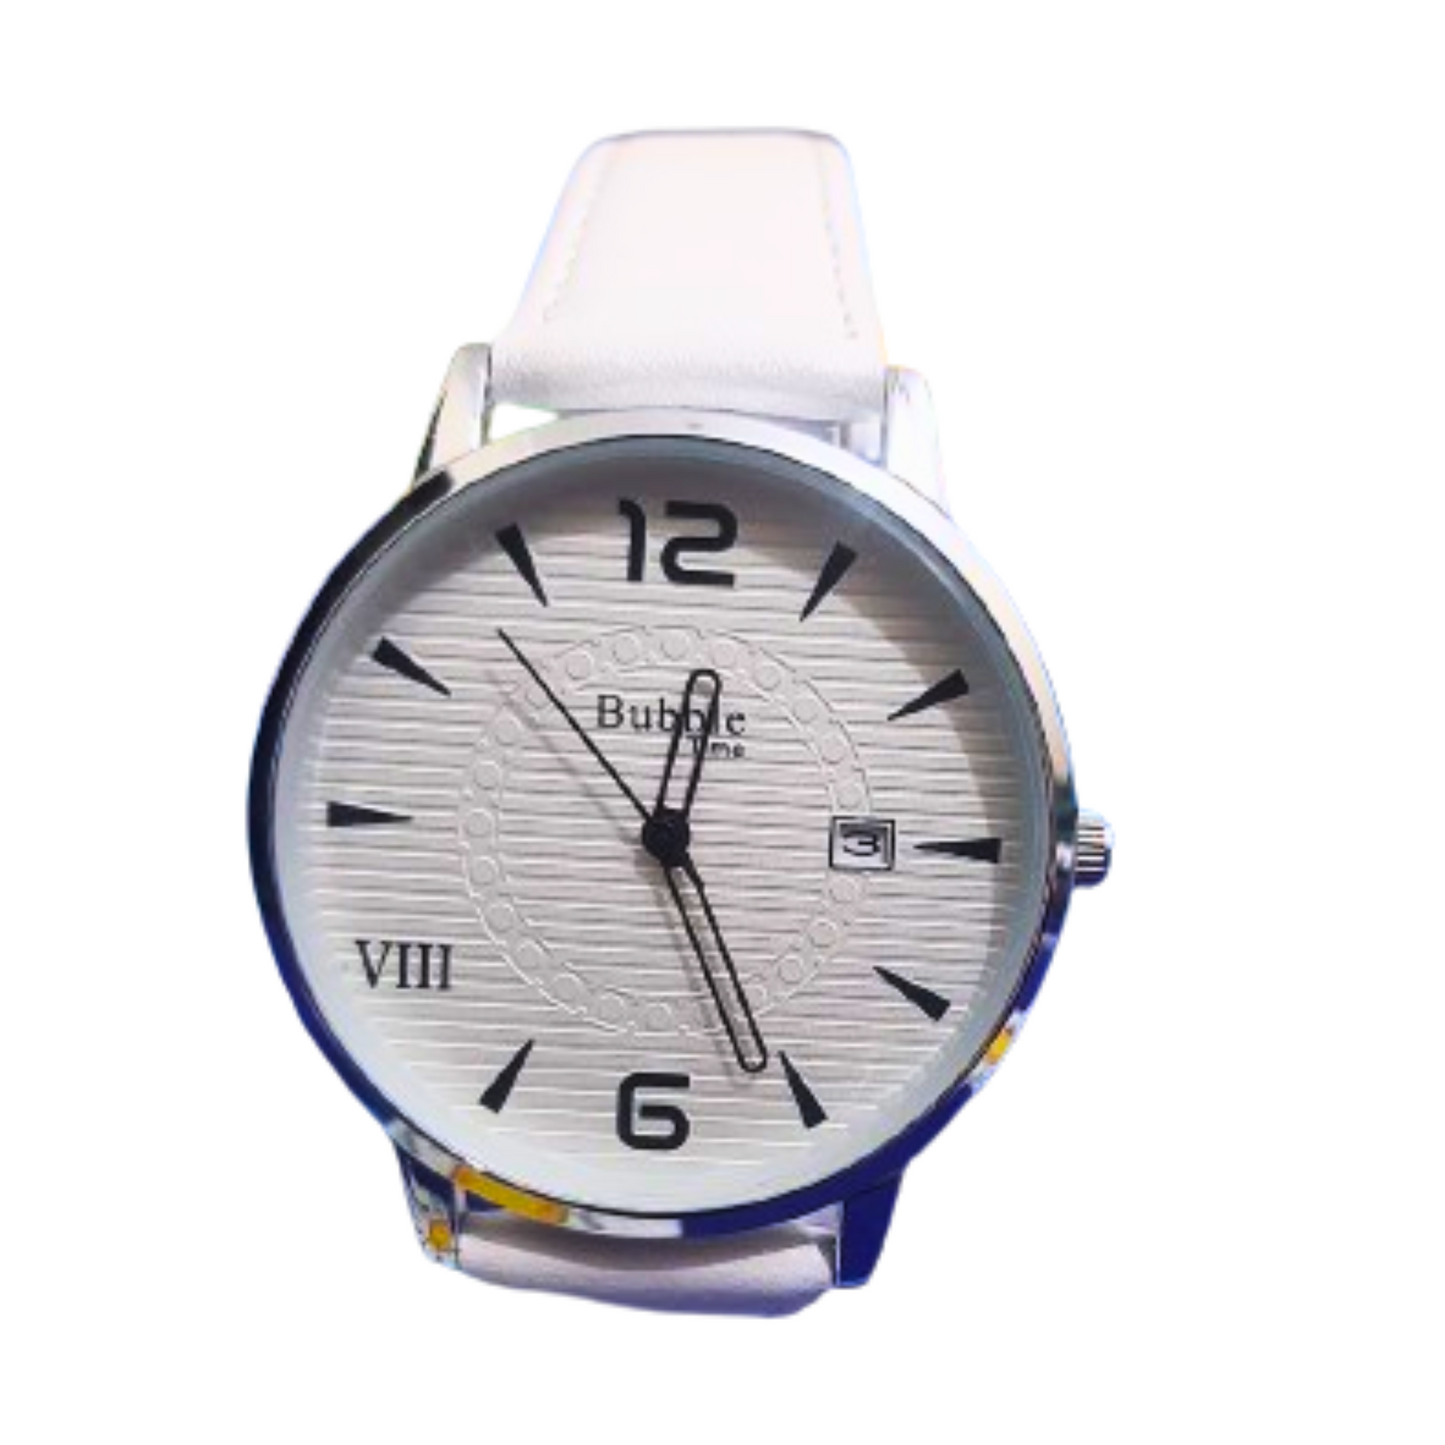 White Bubble Time women's wristwatch